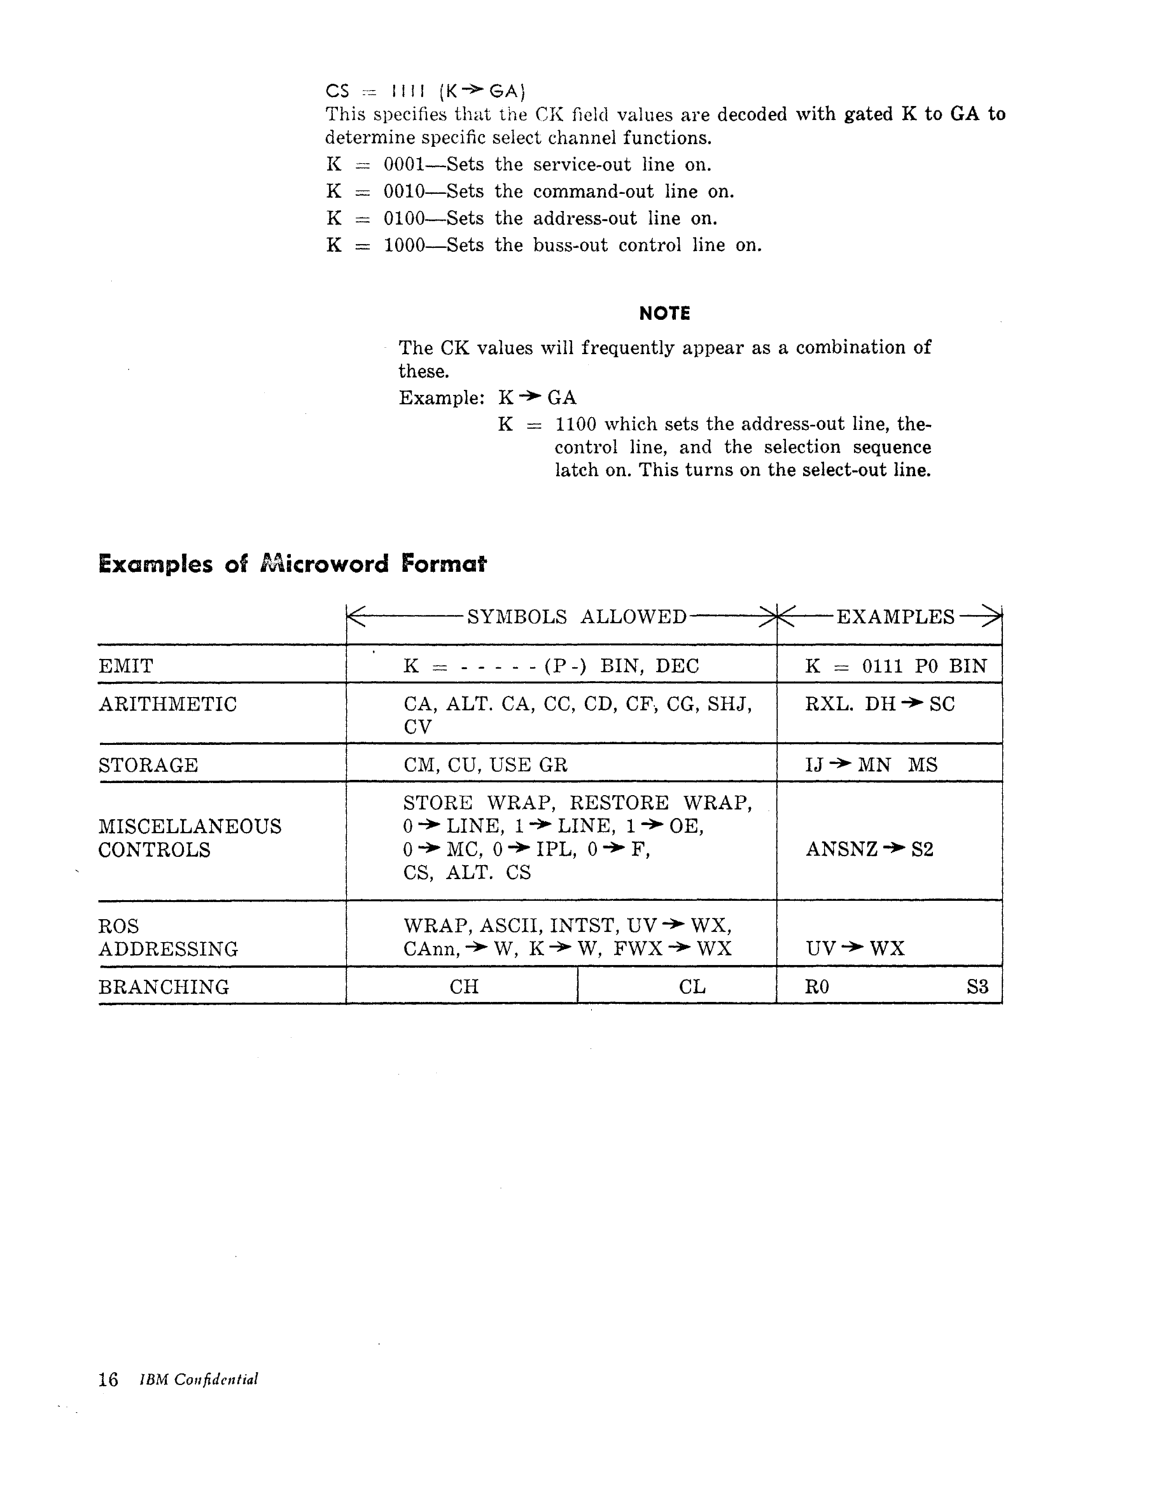 Model_30_Microprogramming_Lang.pdf page 17